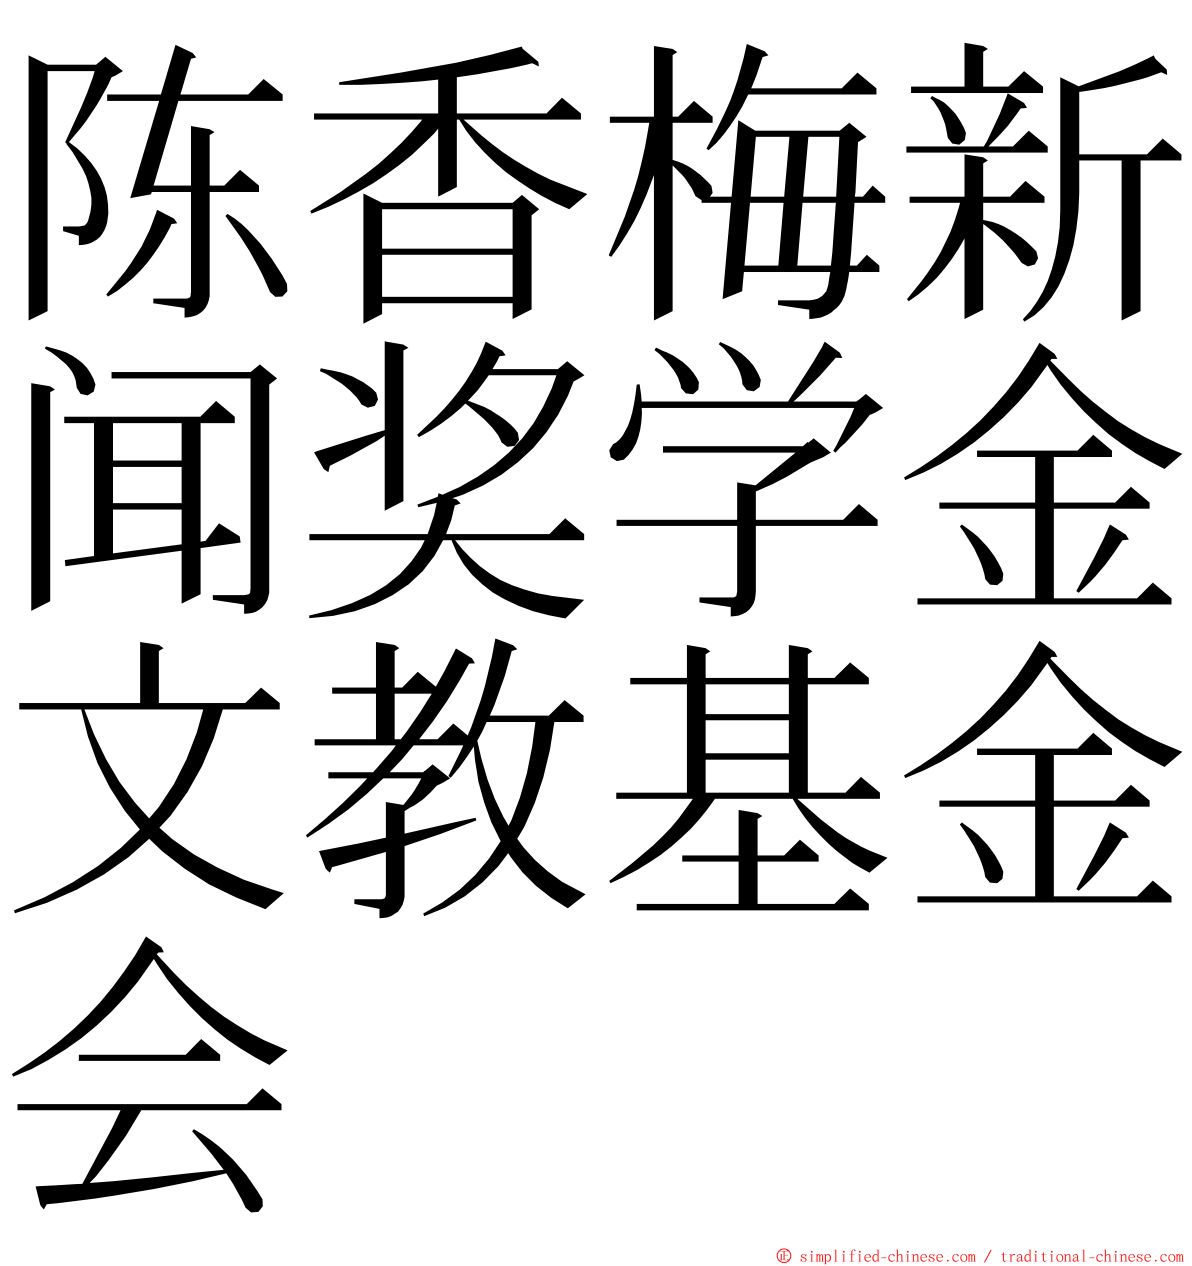 陈香梅新闻奖学金文教基金会 ming font